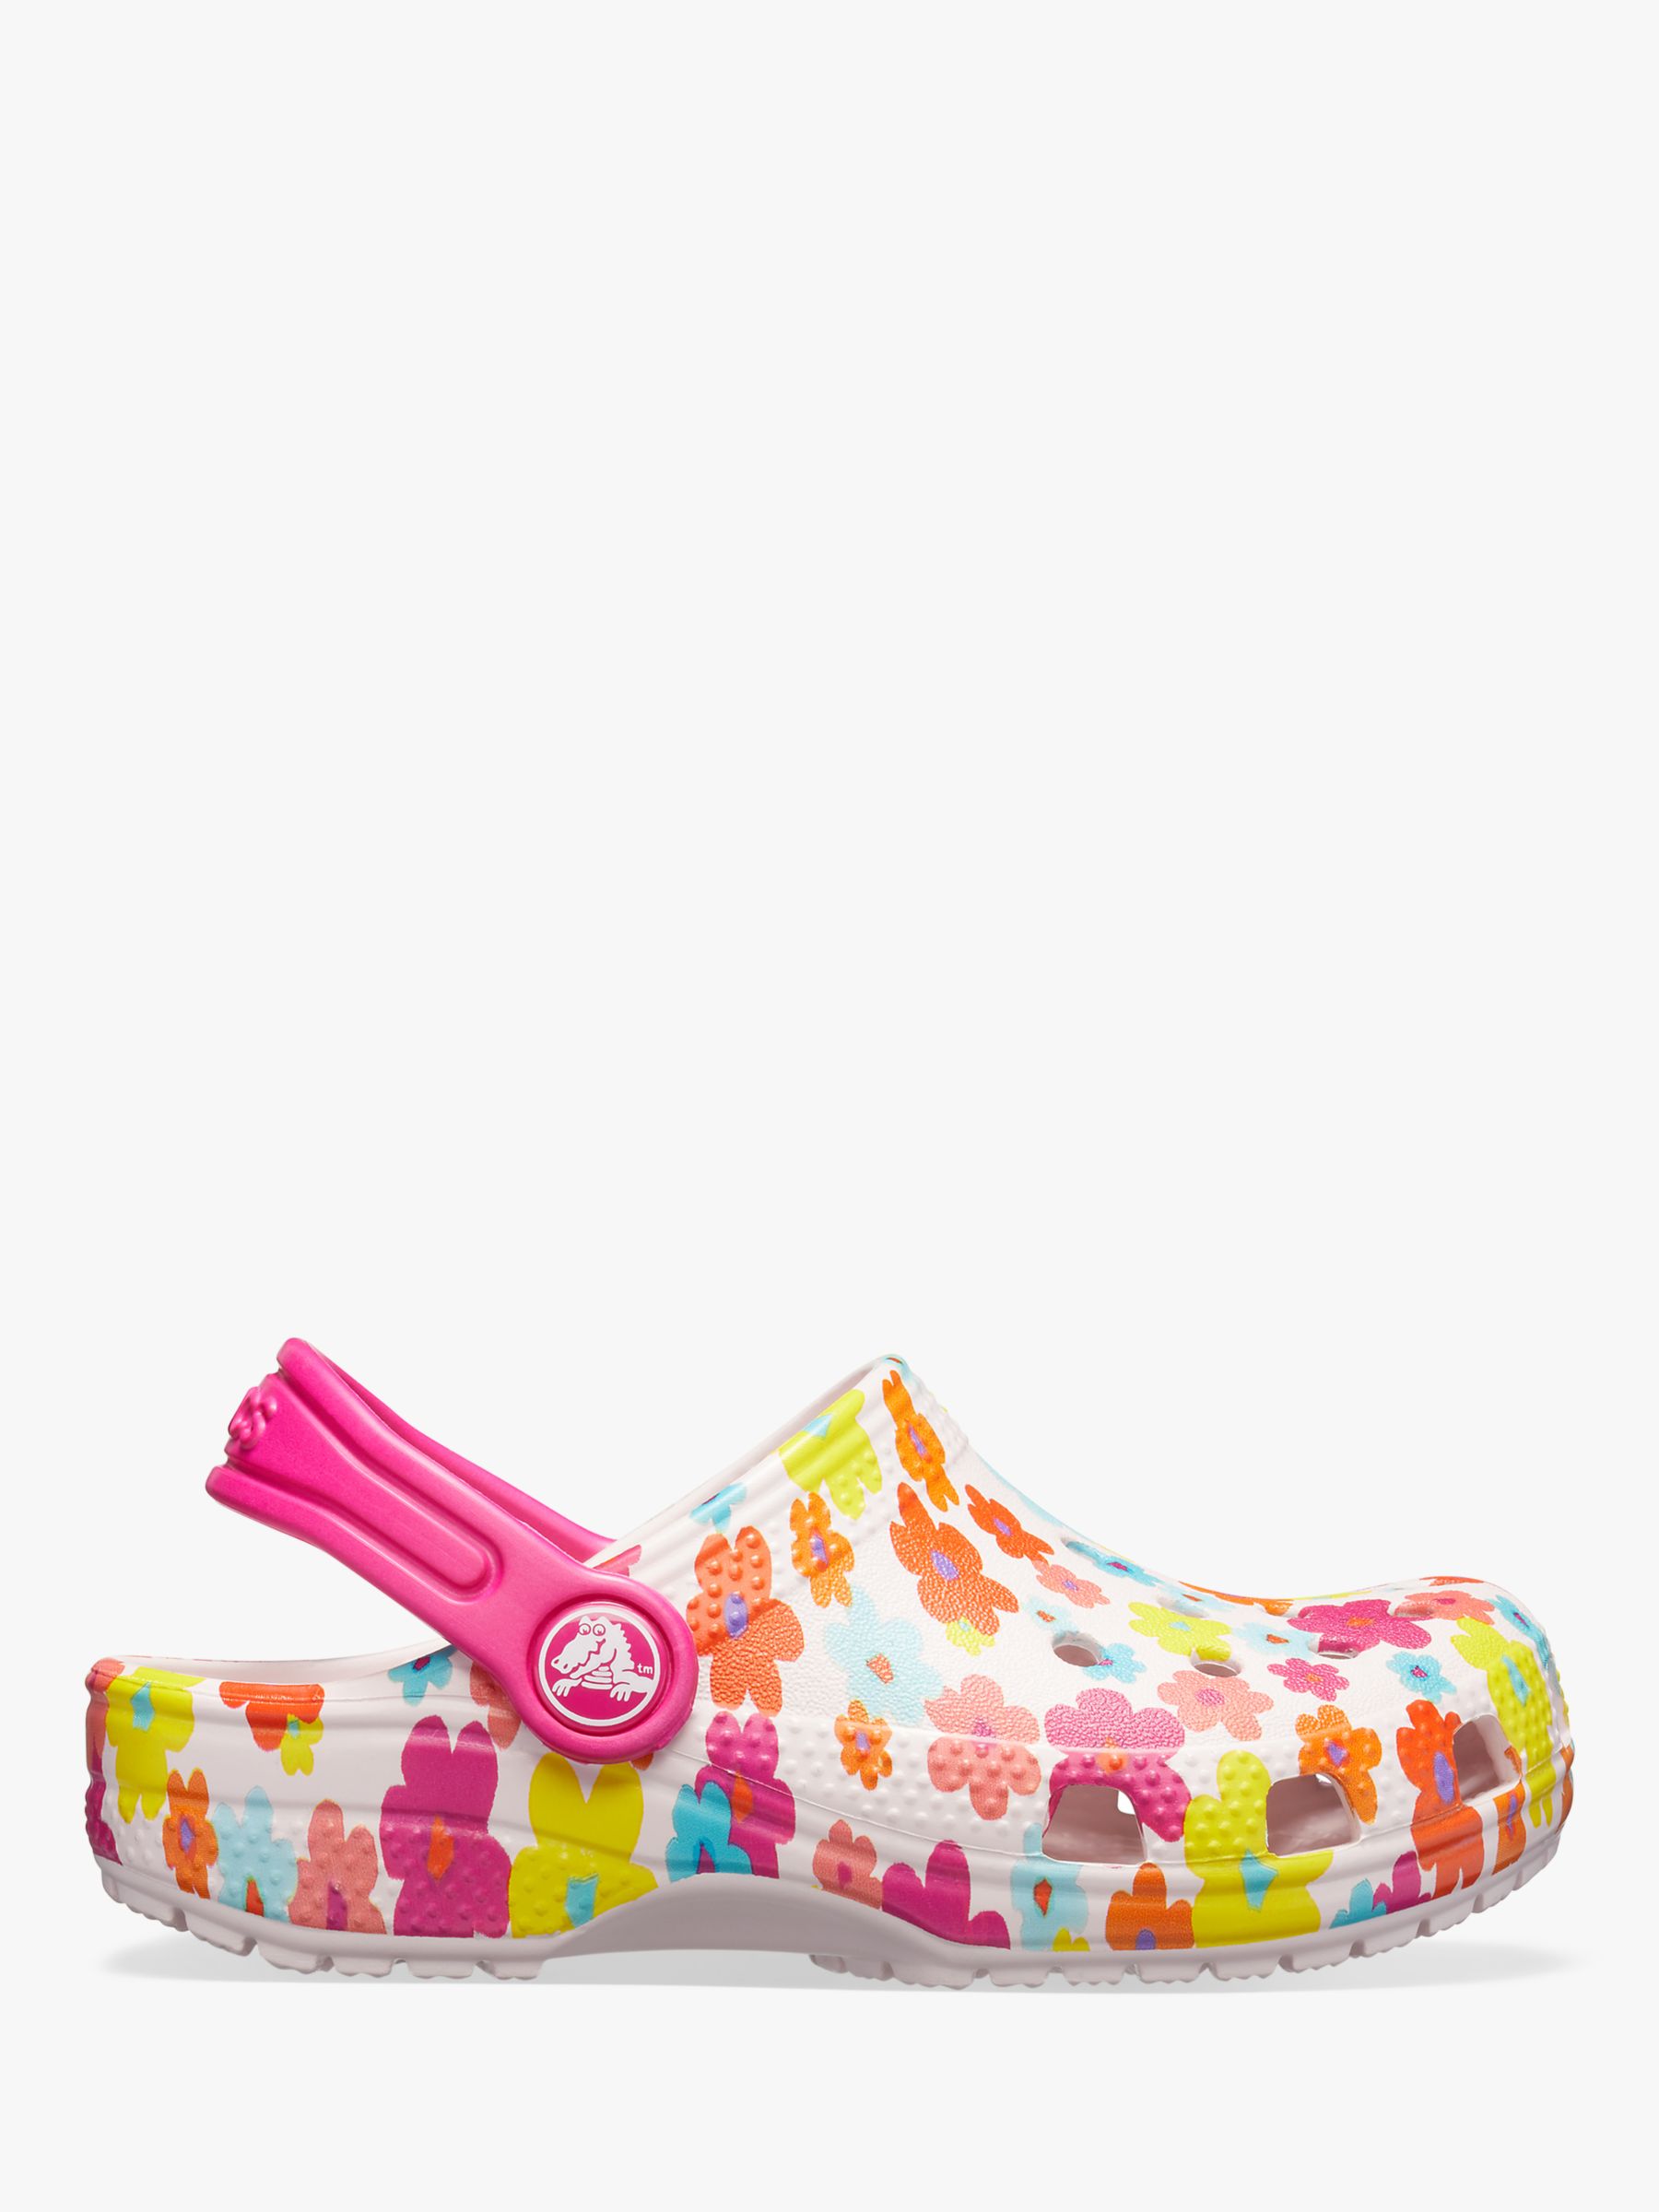 crocs floral shoes